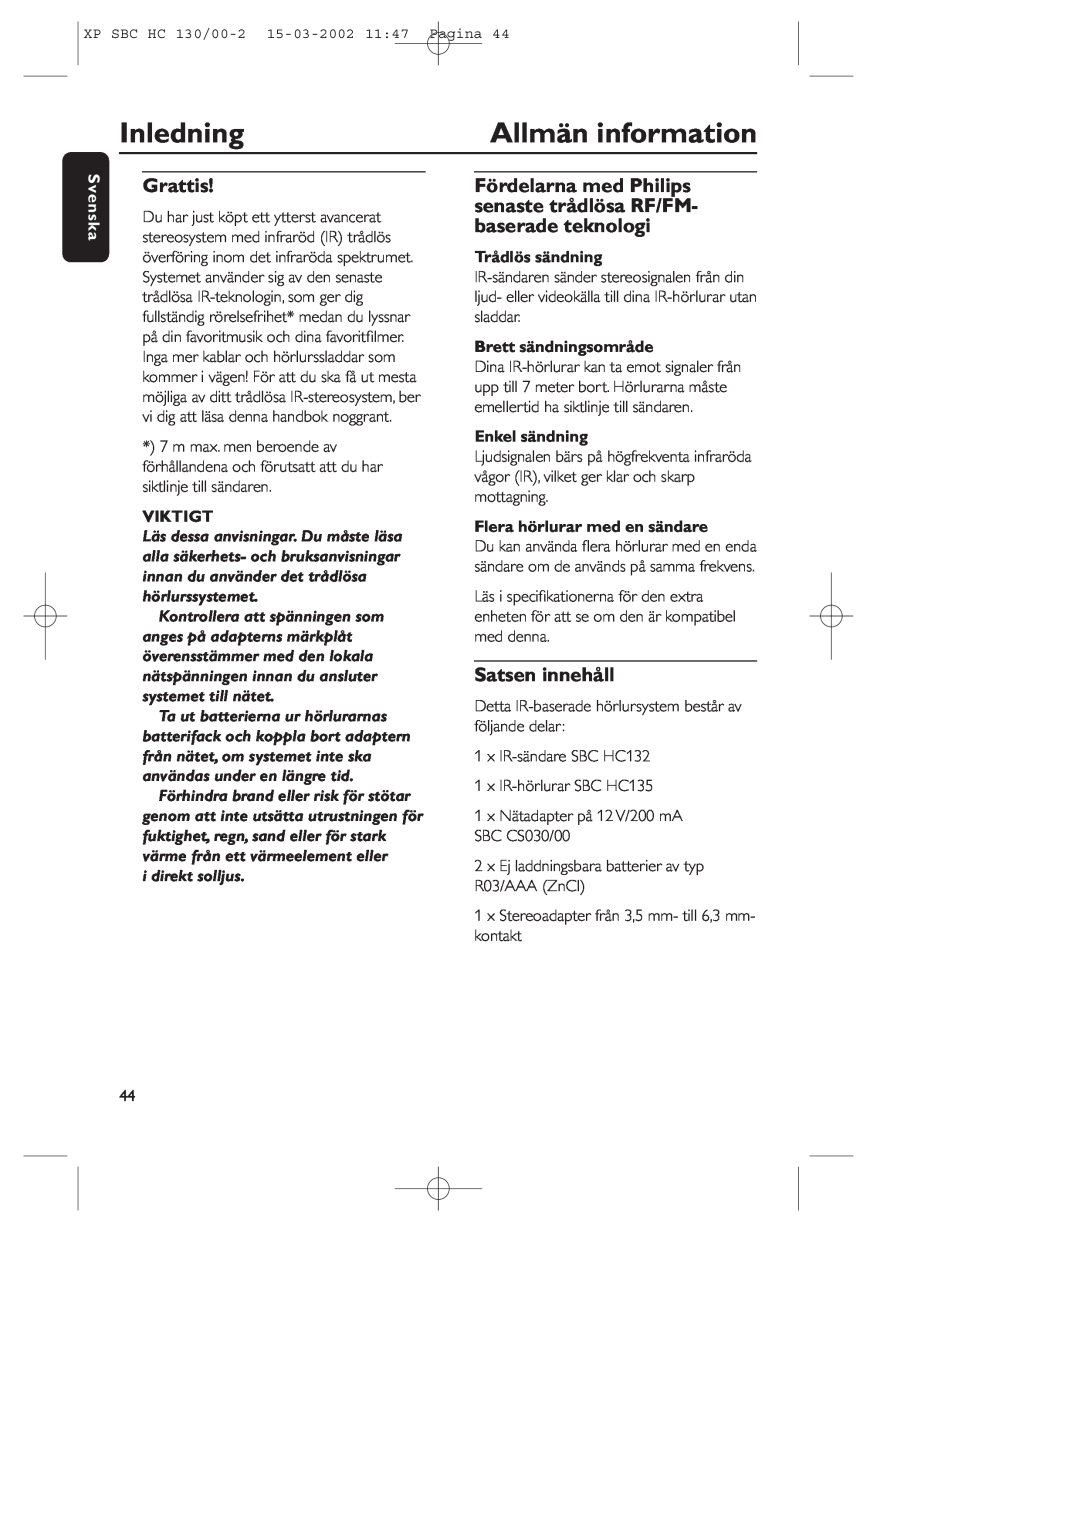 Philips SBC HC130 manual Inledning, Allmän information, Grattis, Satsen innehåll, Svenska, Viktigt, Trådlös sändning 